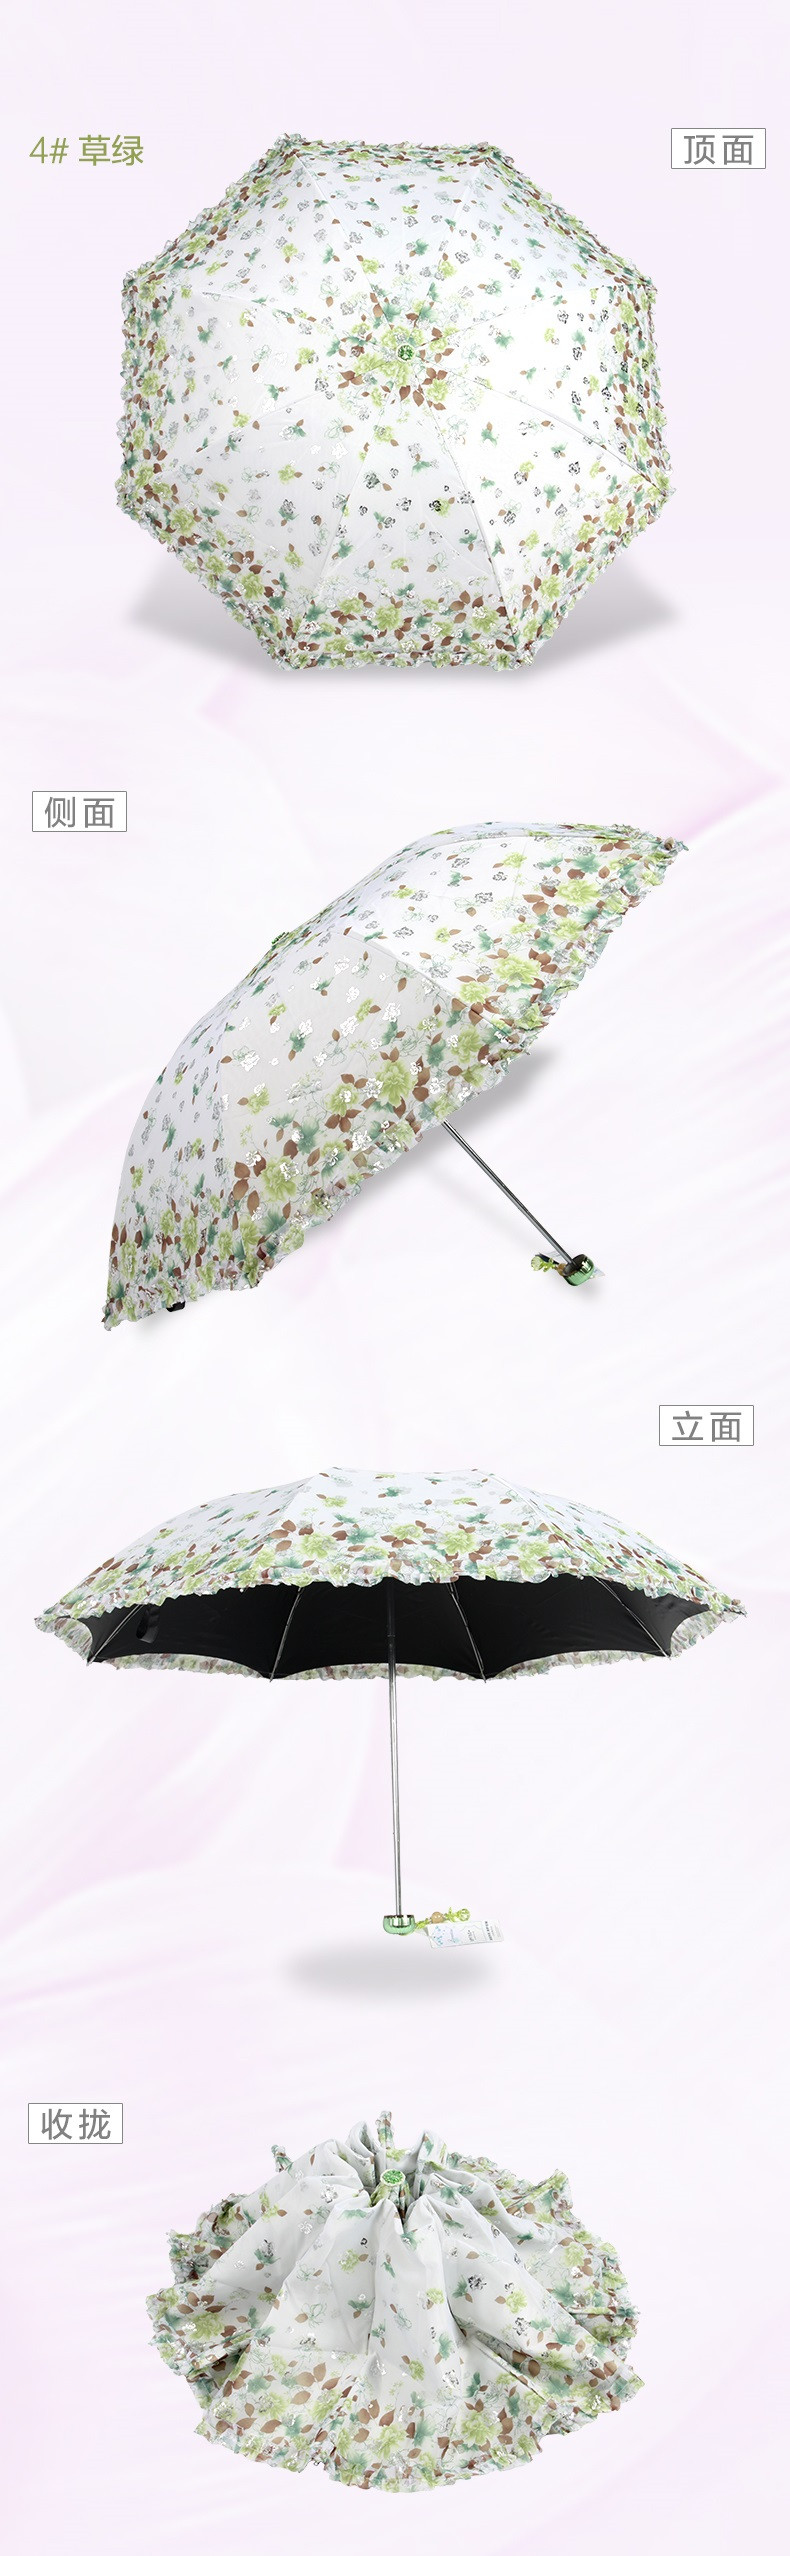 天堂伞正品遮阳伞晴雨伞双层蕾丝印花黑胶加强防紫外线太阳伞女士